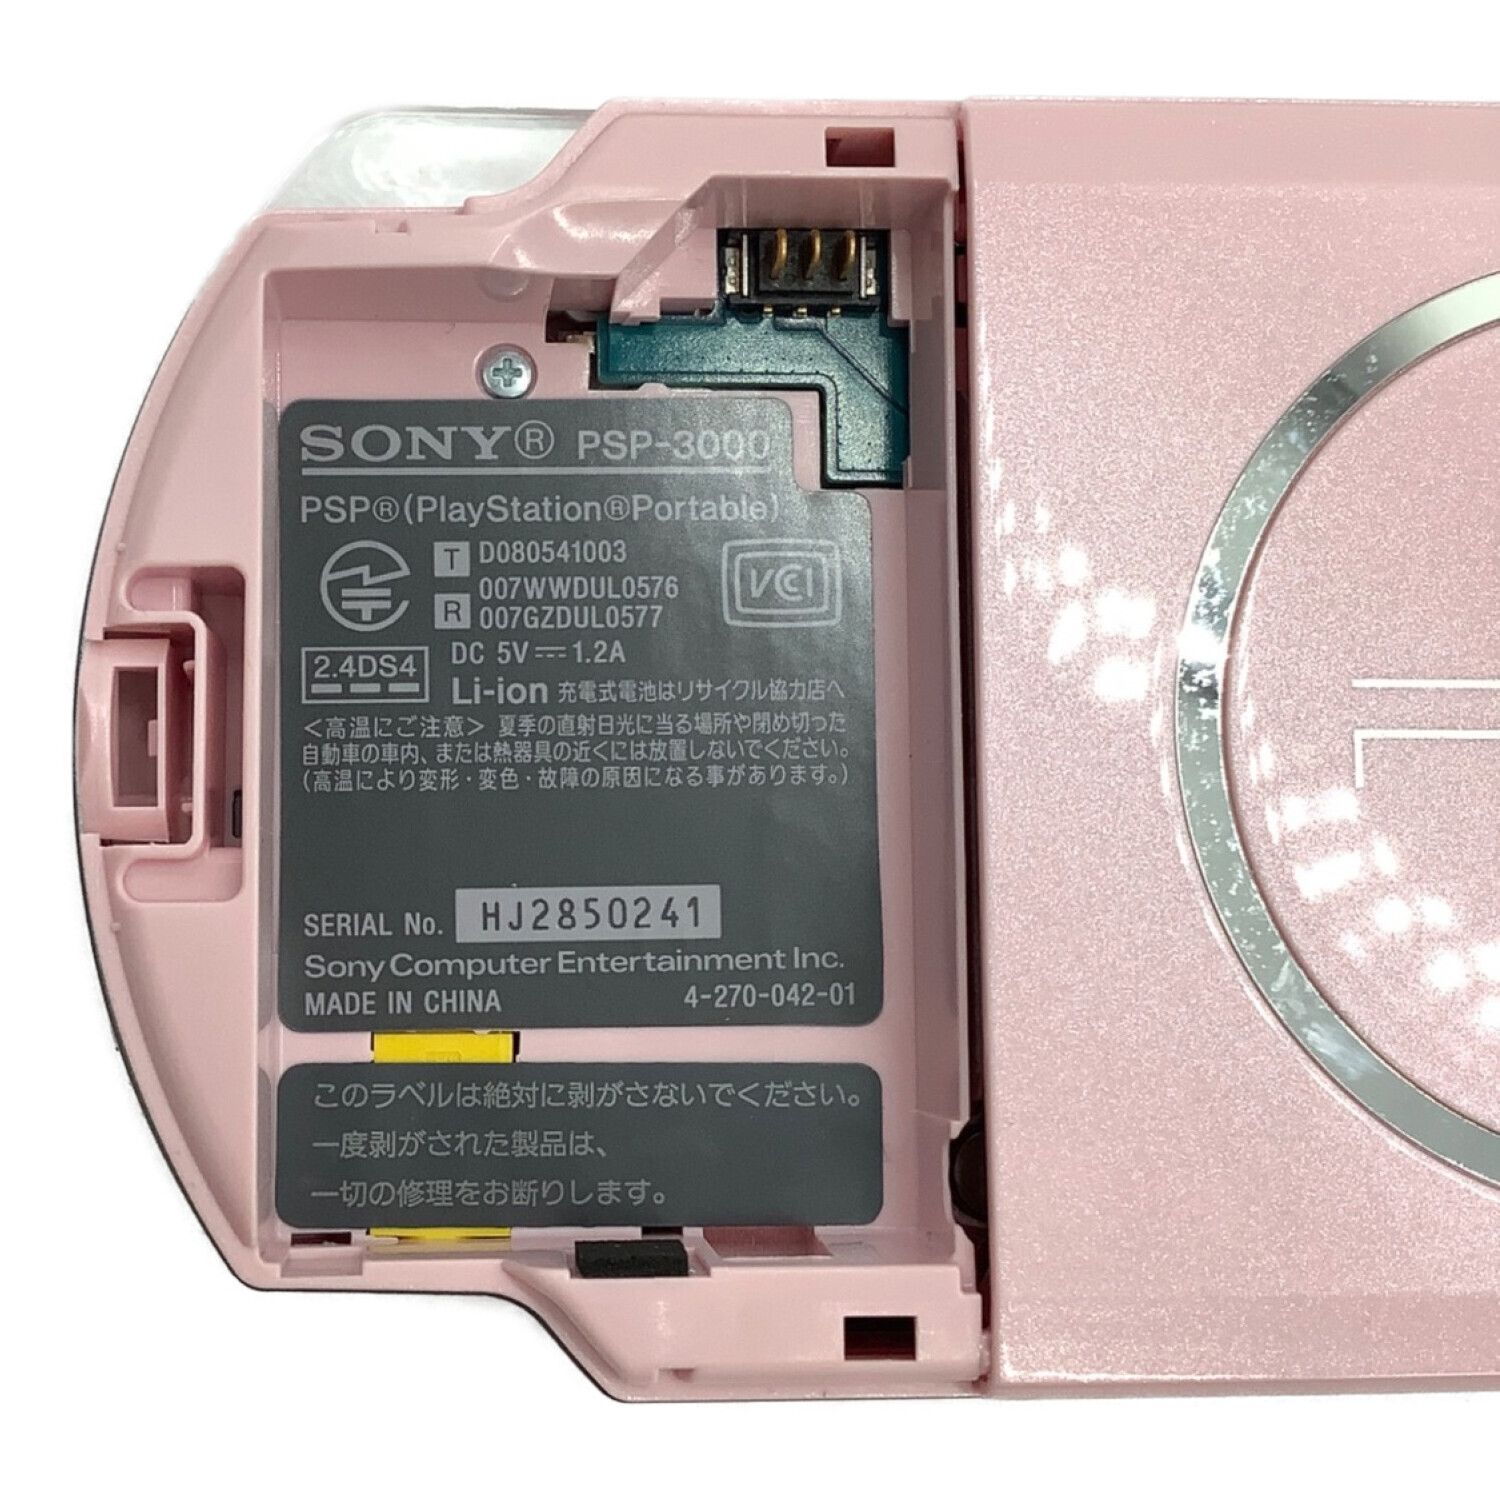 SONY (ソニー) PSP ブロッサムピンク 動作確認済 バッテリー状態不明